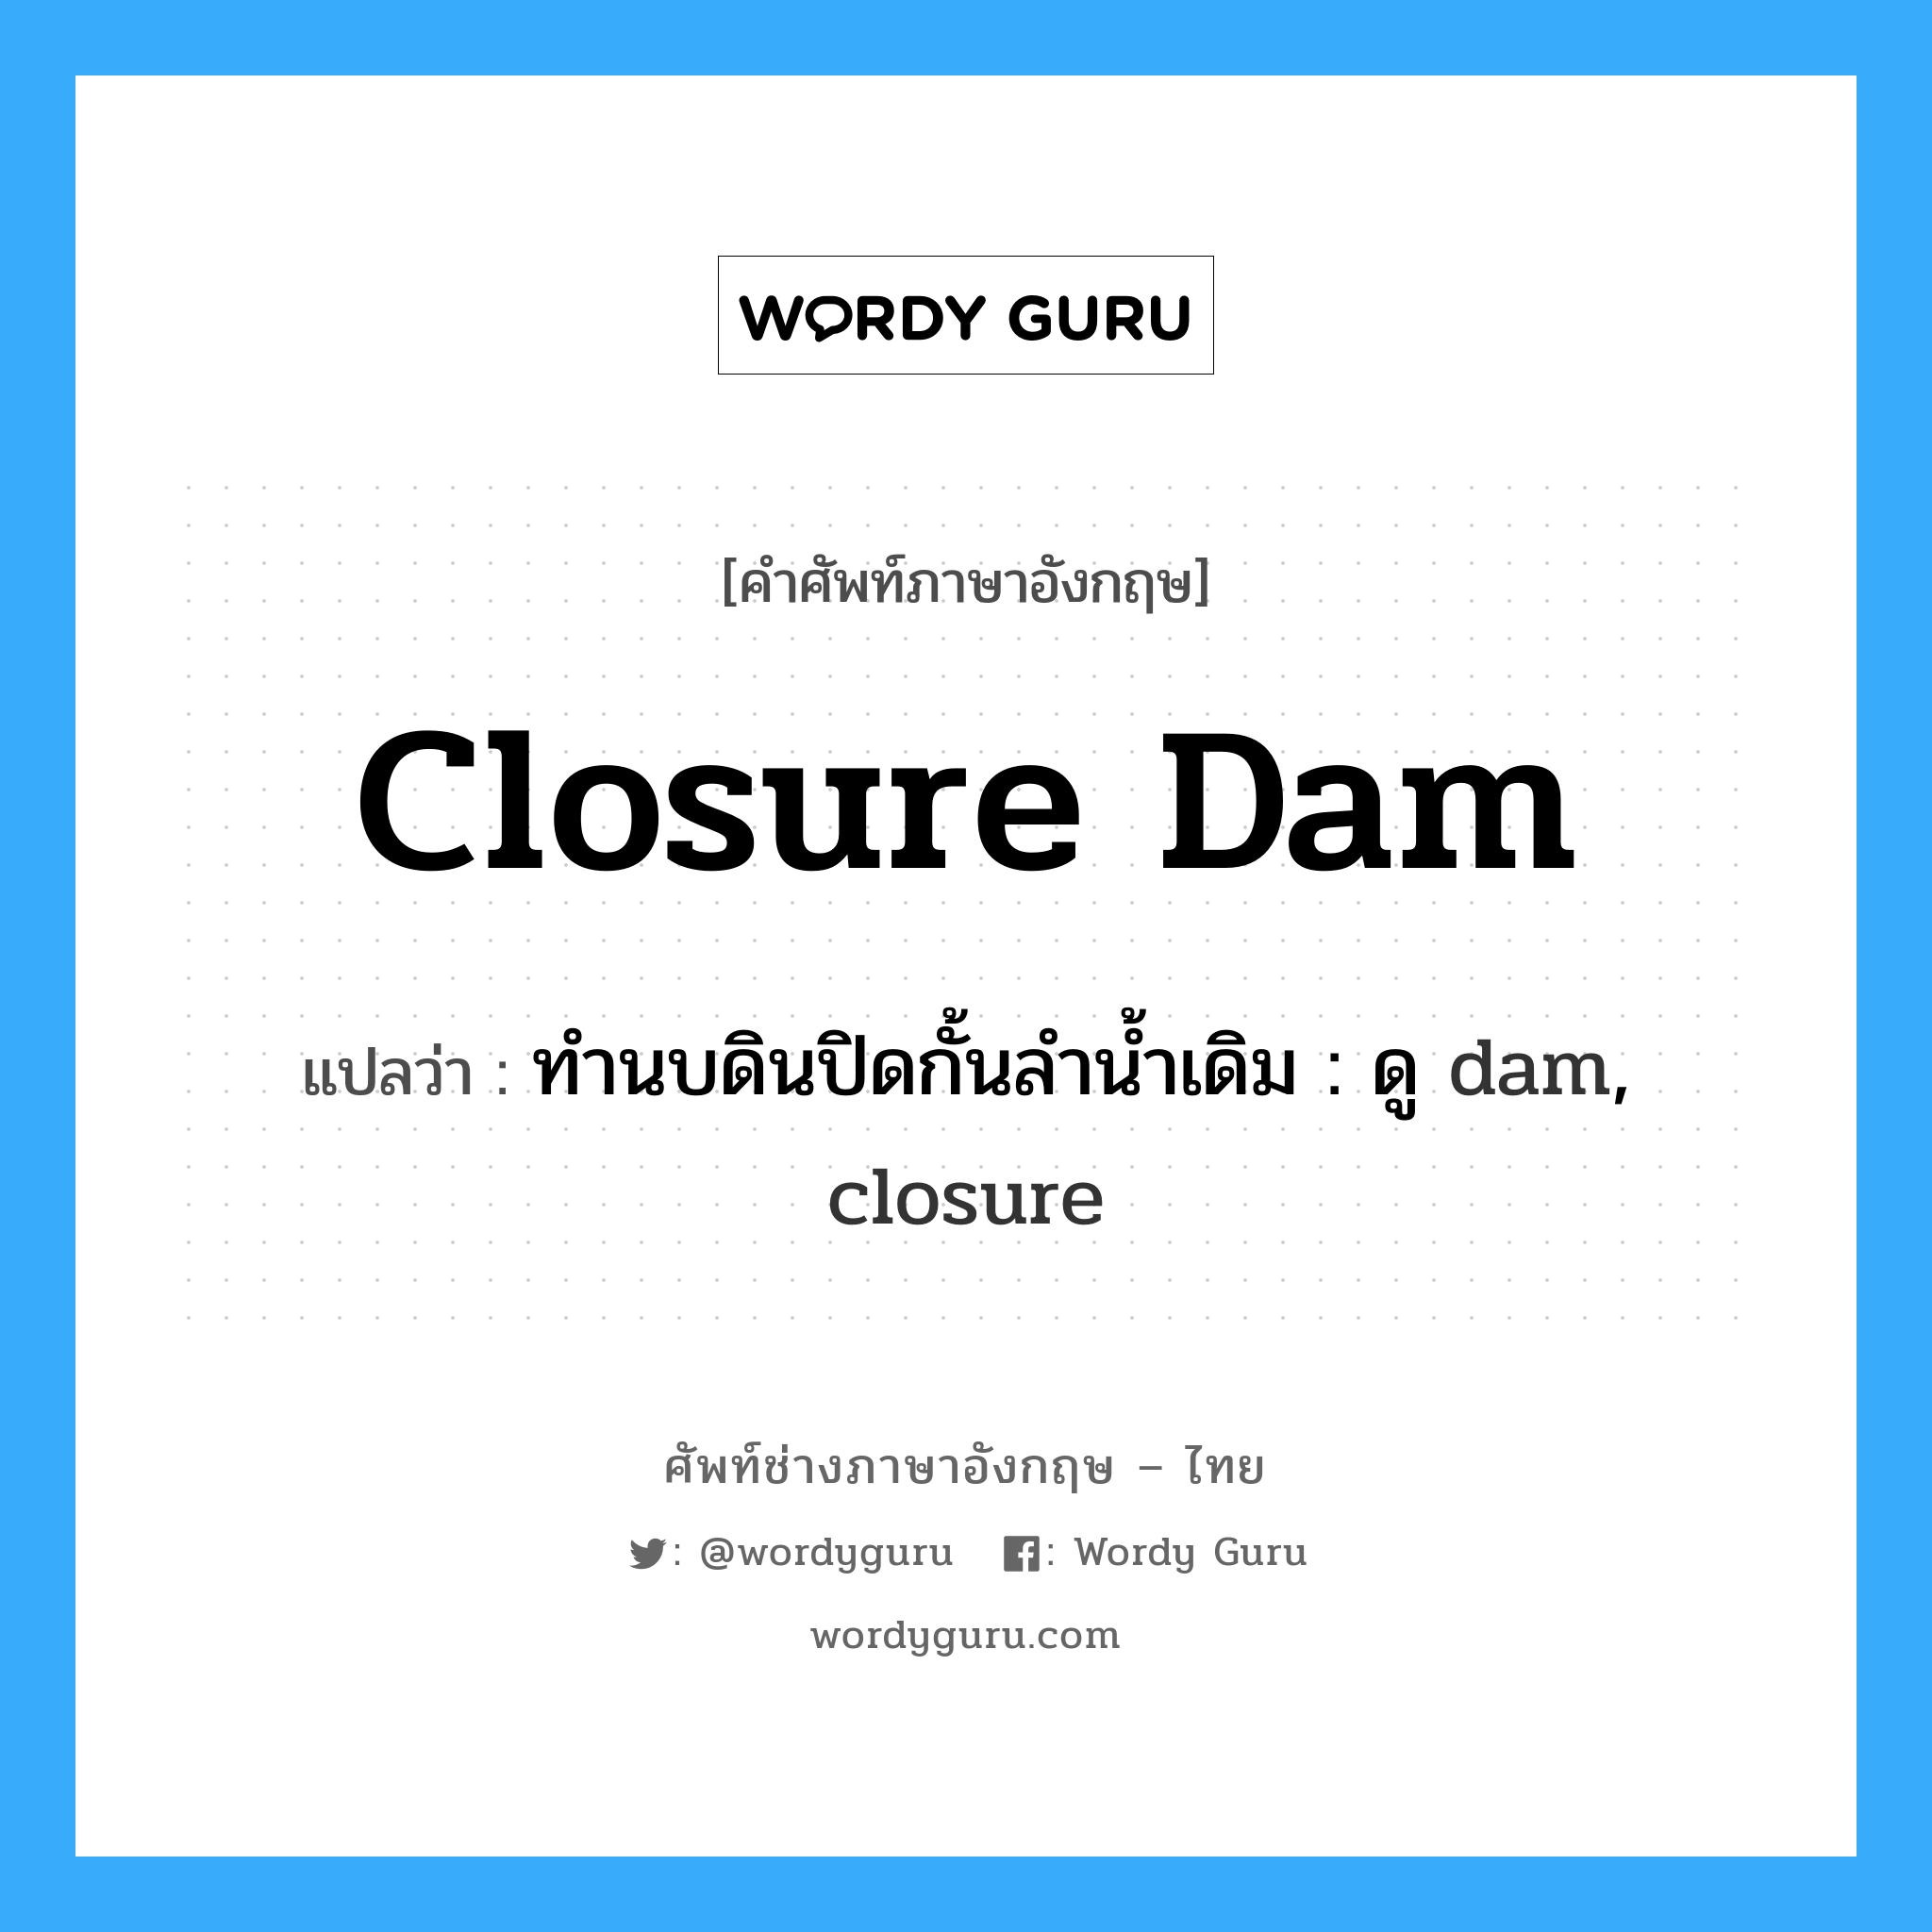 ทำนบดินปิดกั้นลำน้ำเดิม : ดู dam, closure ภาษาอังกฤษ?, คำศัพท์ช่างภาษาอังกฤษ - ไทย ทำนบดินปิดกั้นลำน้ำเดิม : ดู dam, closure คำศัพท์ภาษาอังกฤษ ทำนบดินปิดกั้นลำน้ำเดิม : ดู dam, closure แปลว่า closure dam